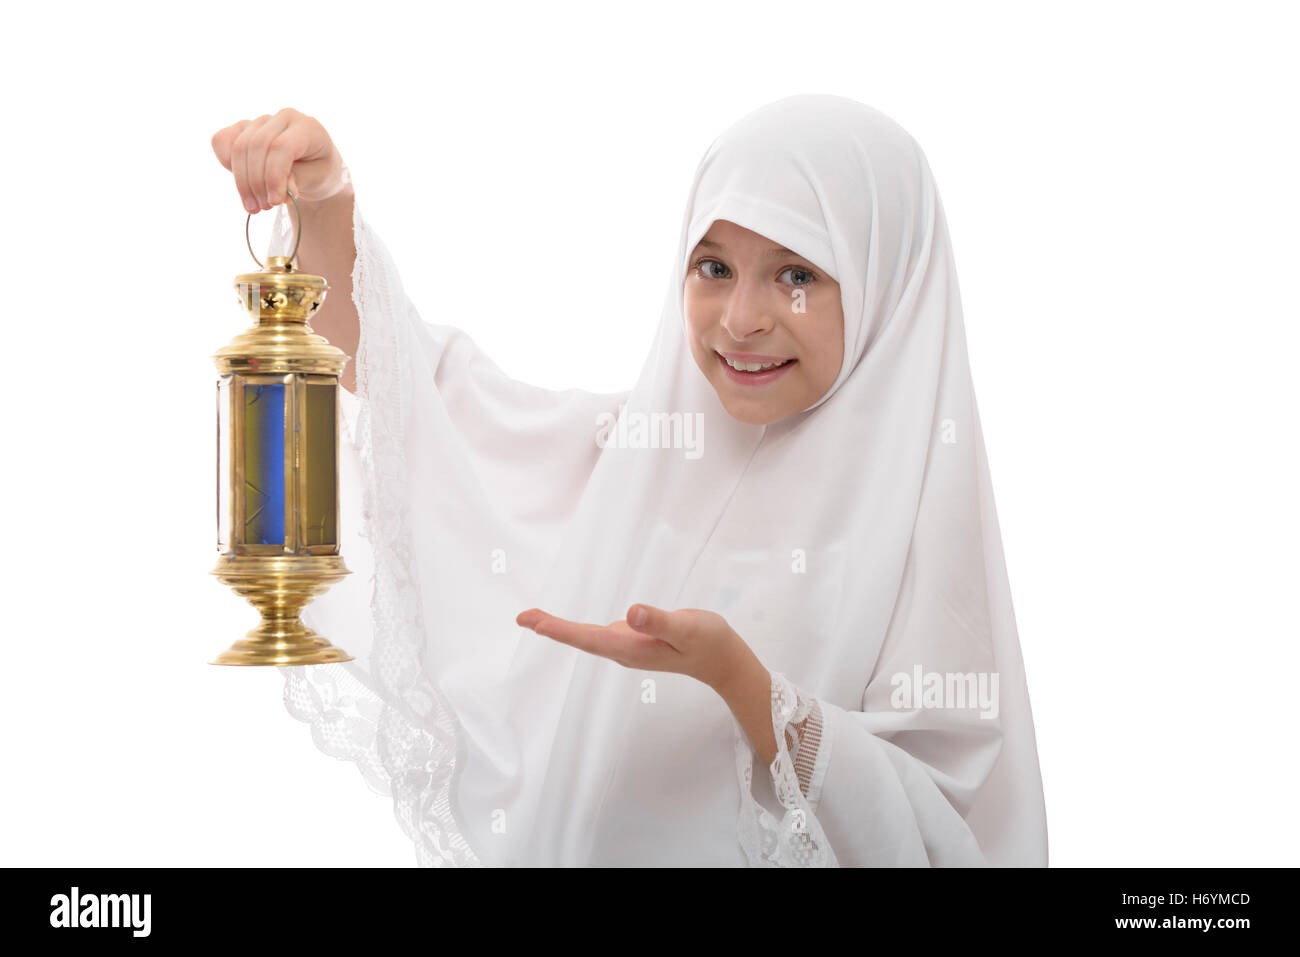 Heureux jeune musulmane célébrant le Ramadan avec une lanterne de fête isolé sur fond blanc Banque D'Images